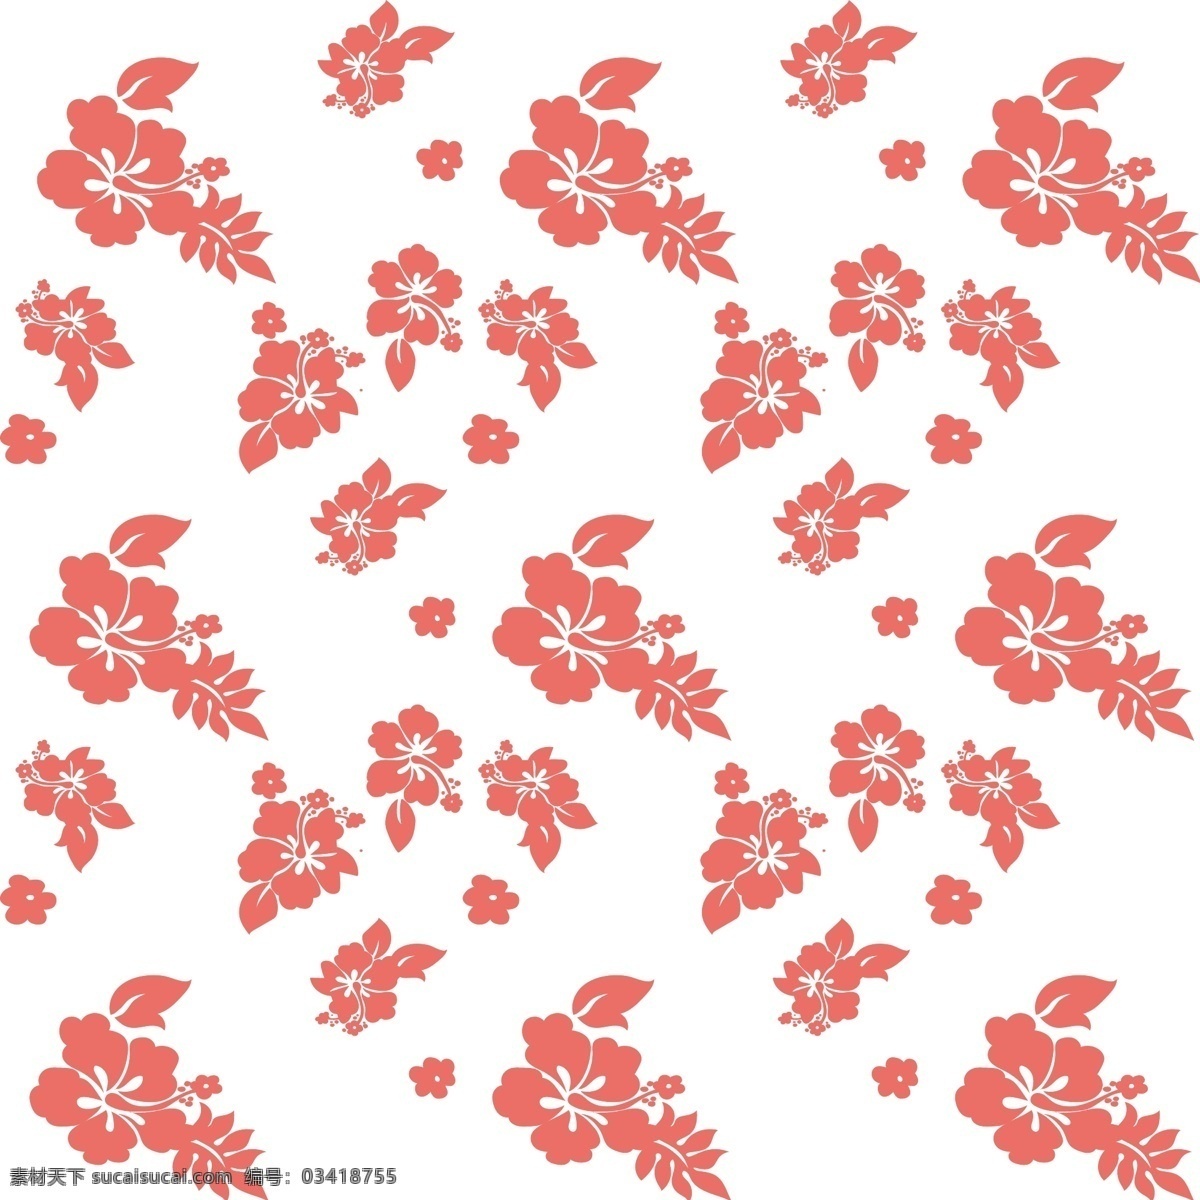 简约 扶 桑花 珊瑚 红 花卉 背景 设计素材 包装 壁纸 元素 扶桑花 珊瑚红 服饰